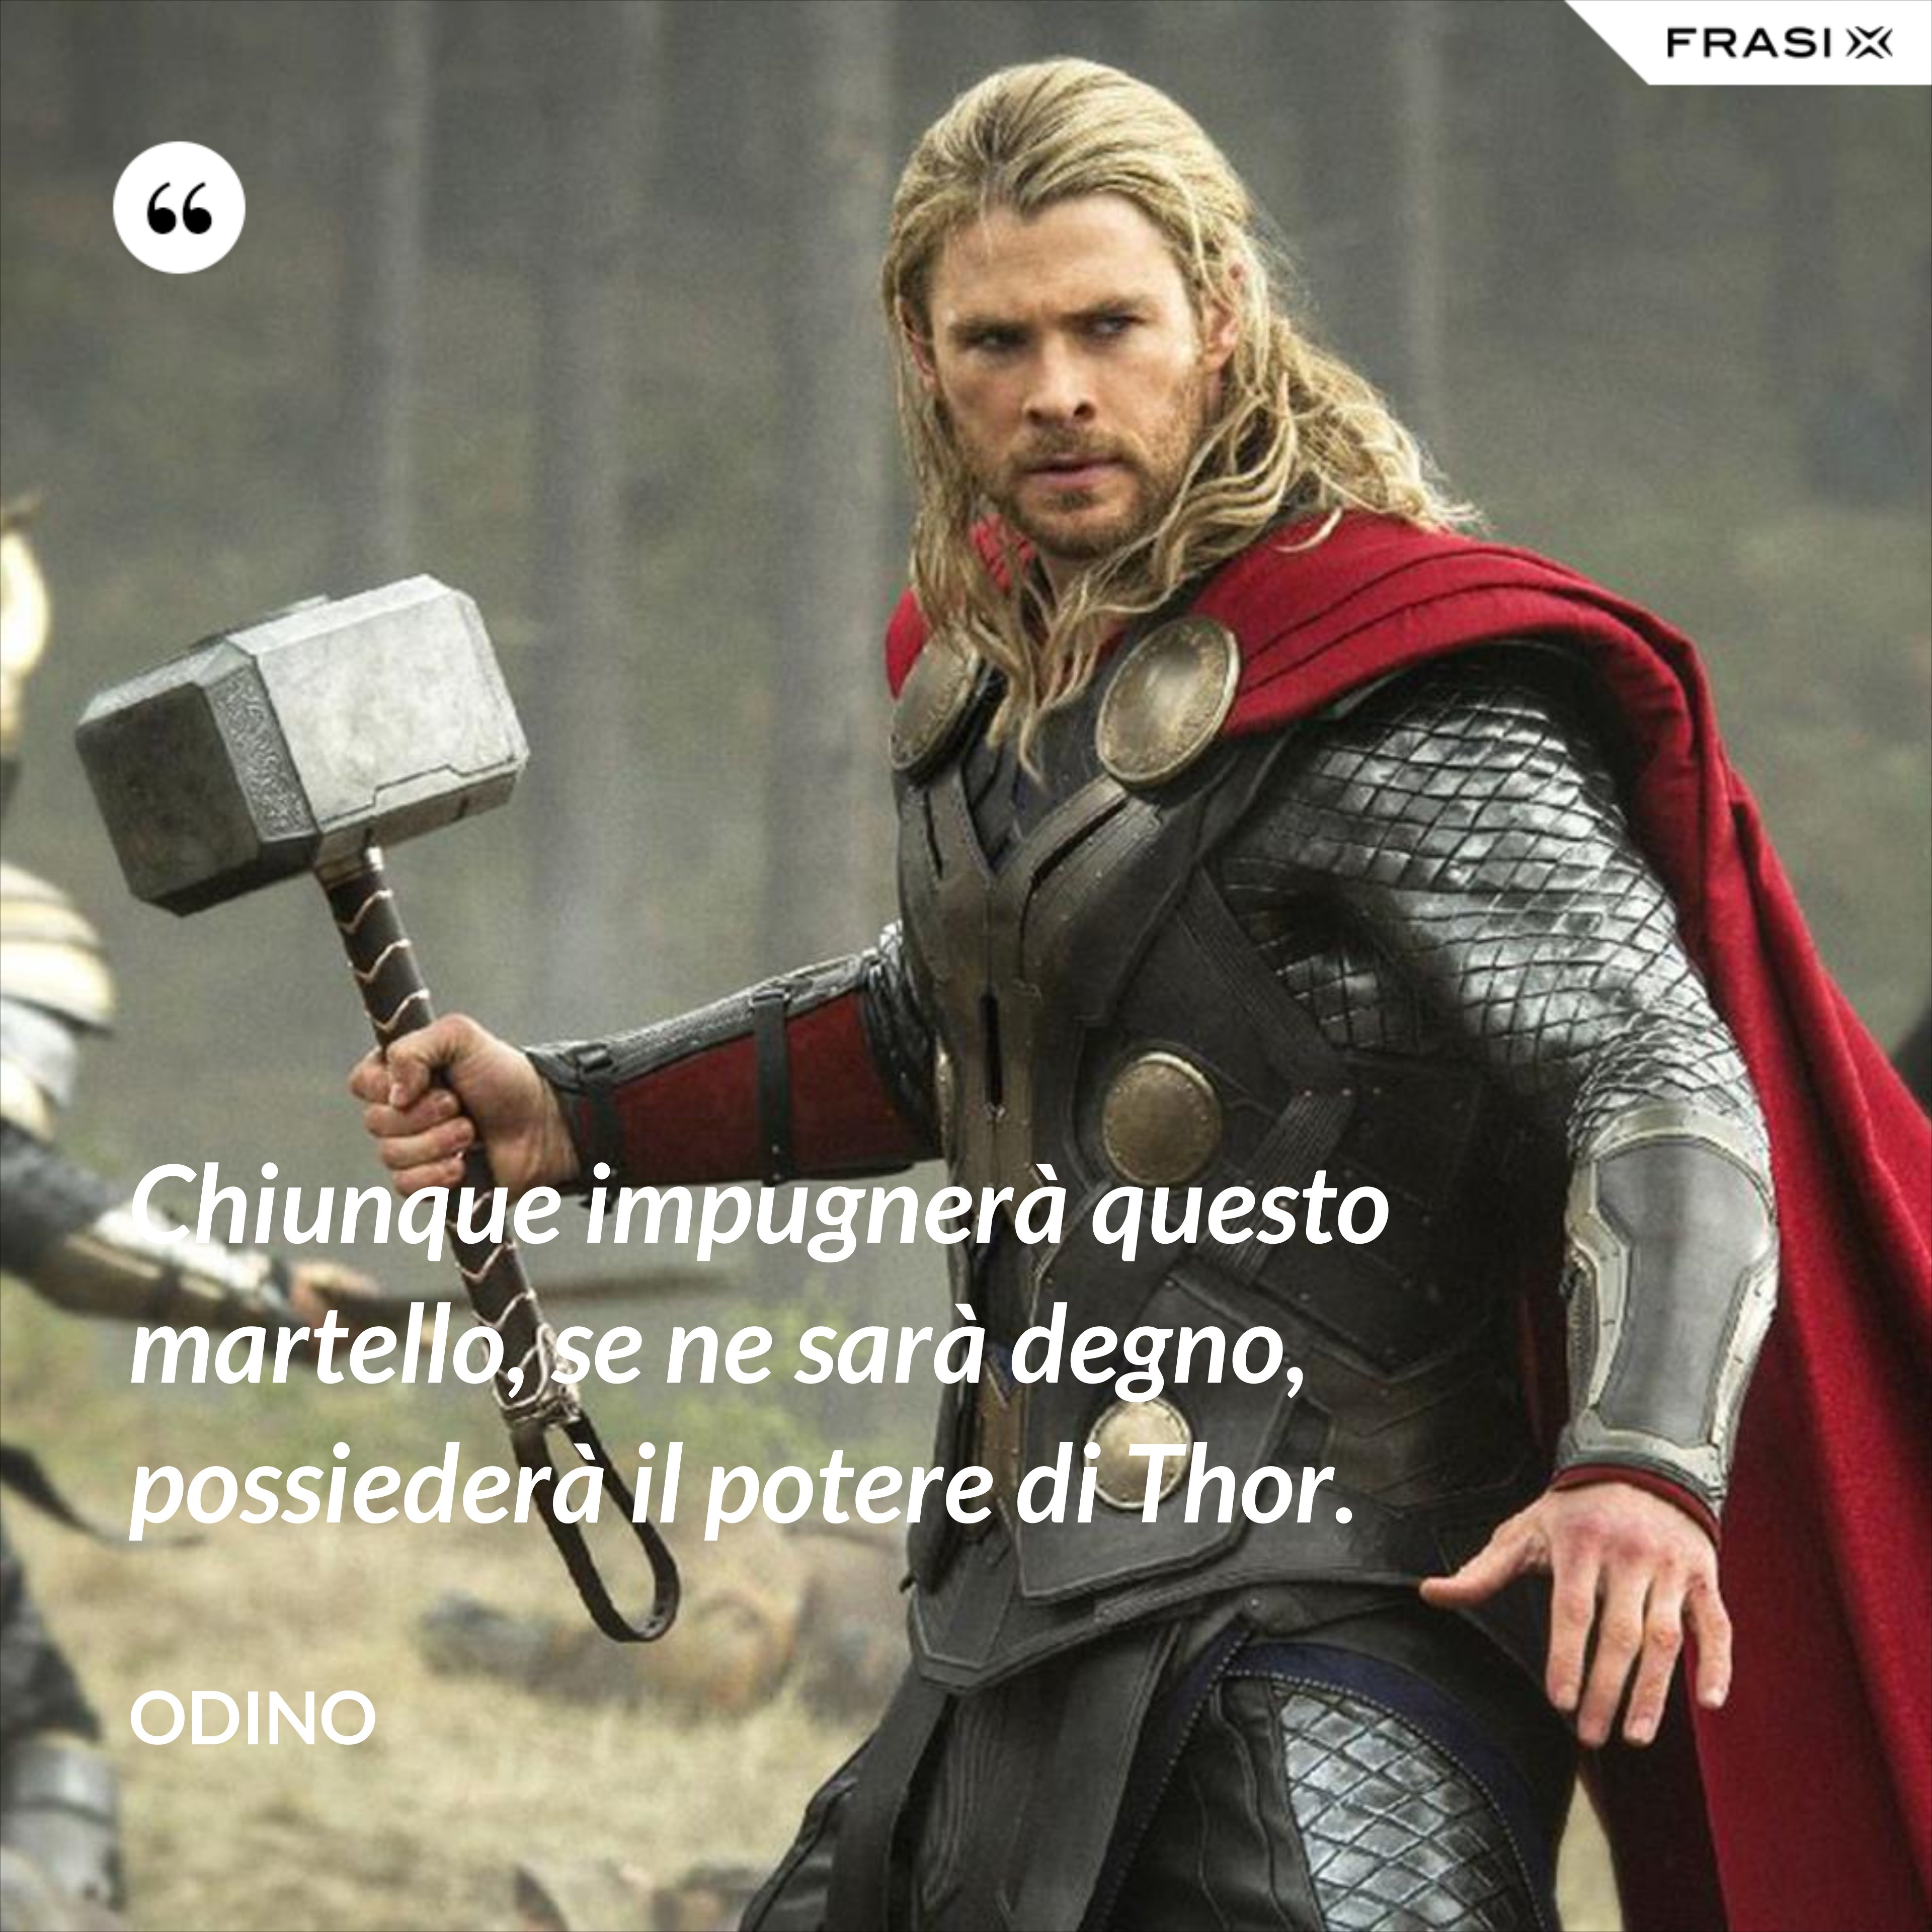 Chiunque impugnerà questo martello, se ne sarà degno, possiederà il potere di Thor. - Odino